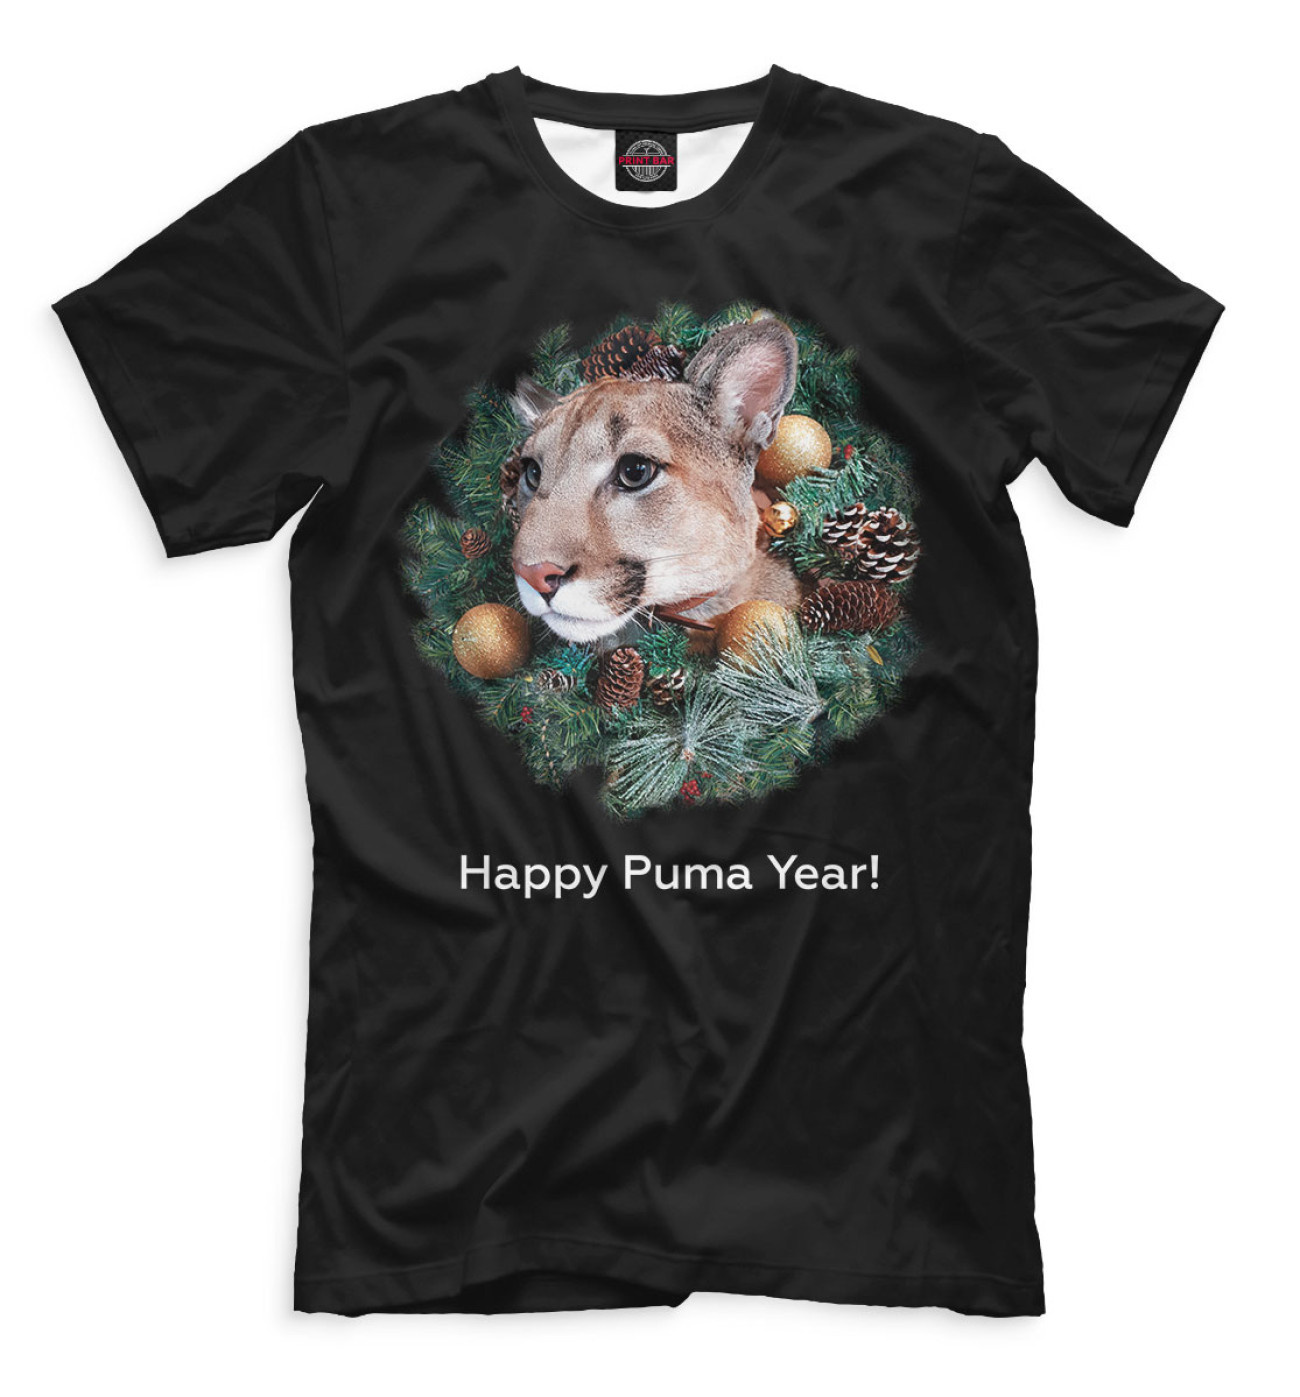 Мужская Футболка Happy Puma Year!, артикул: NVR-582123-fut-2